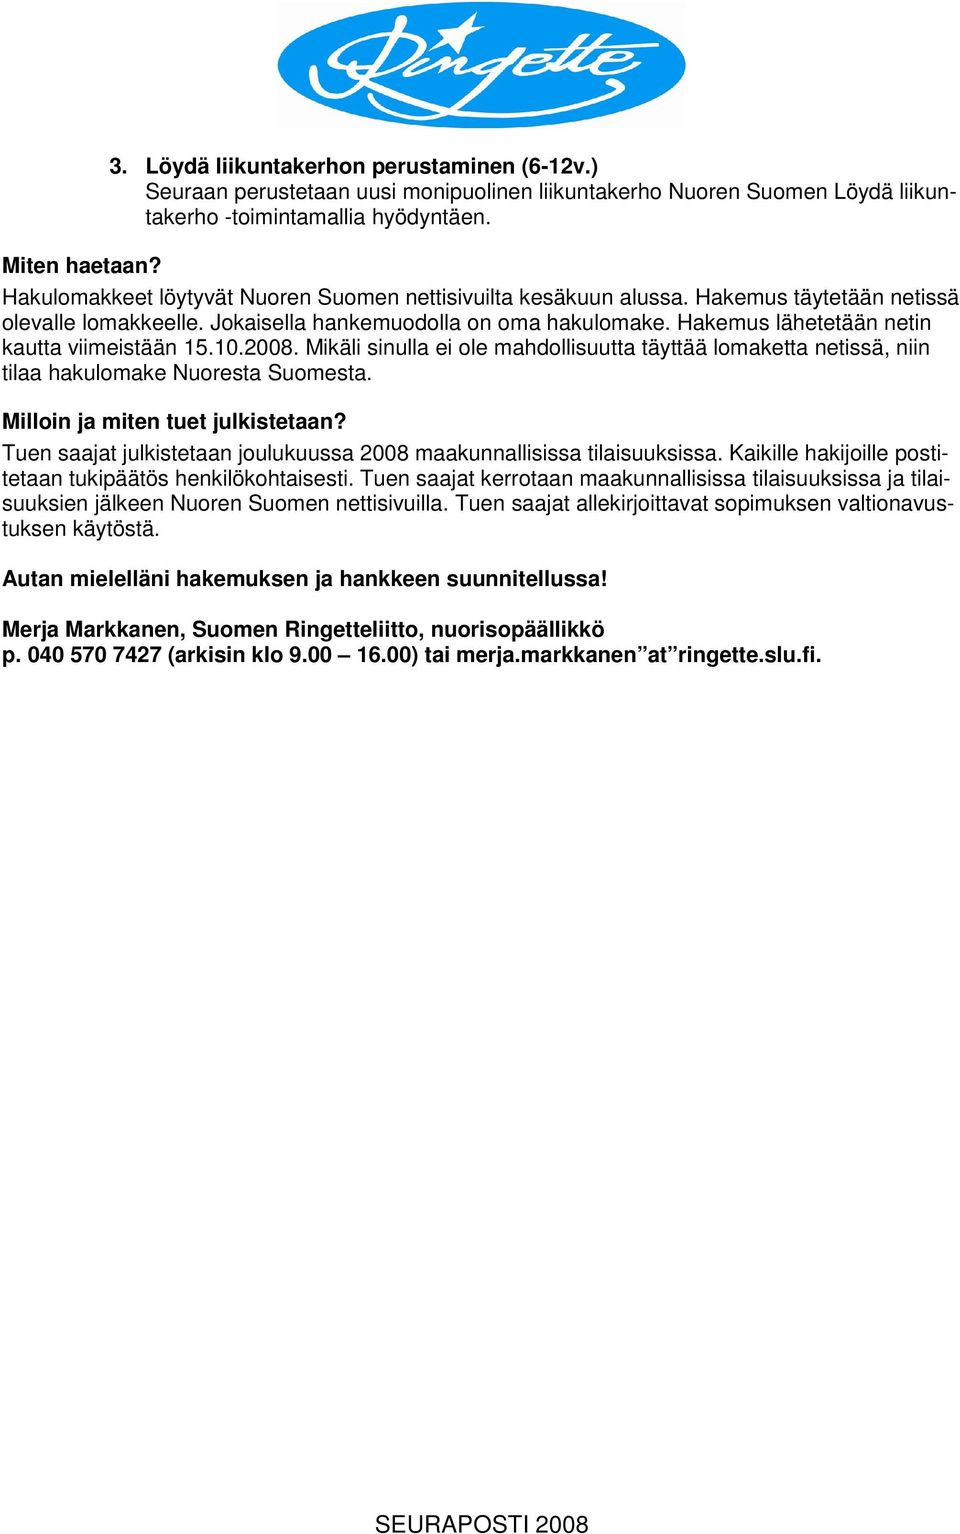 Hakemus lähetetään netin kautta viimeistään 15.10.2008. Mikäli sinulla ei ole mahdollisuutta täyttää lomaketta netissä, niin tilaa hakulomake Nuoresta Suomesta. Milloin ja miten tuet julkistetaan?